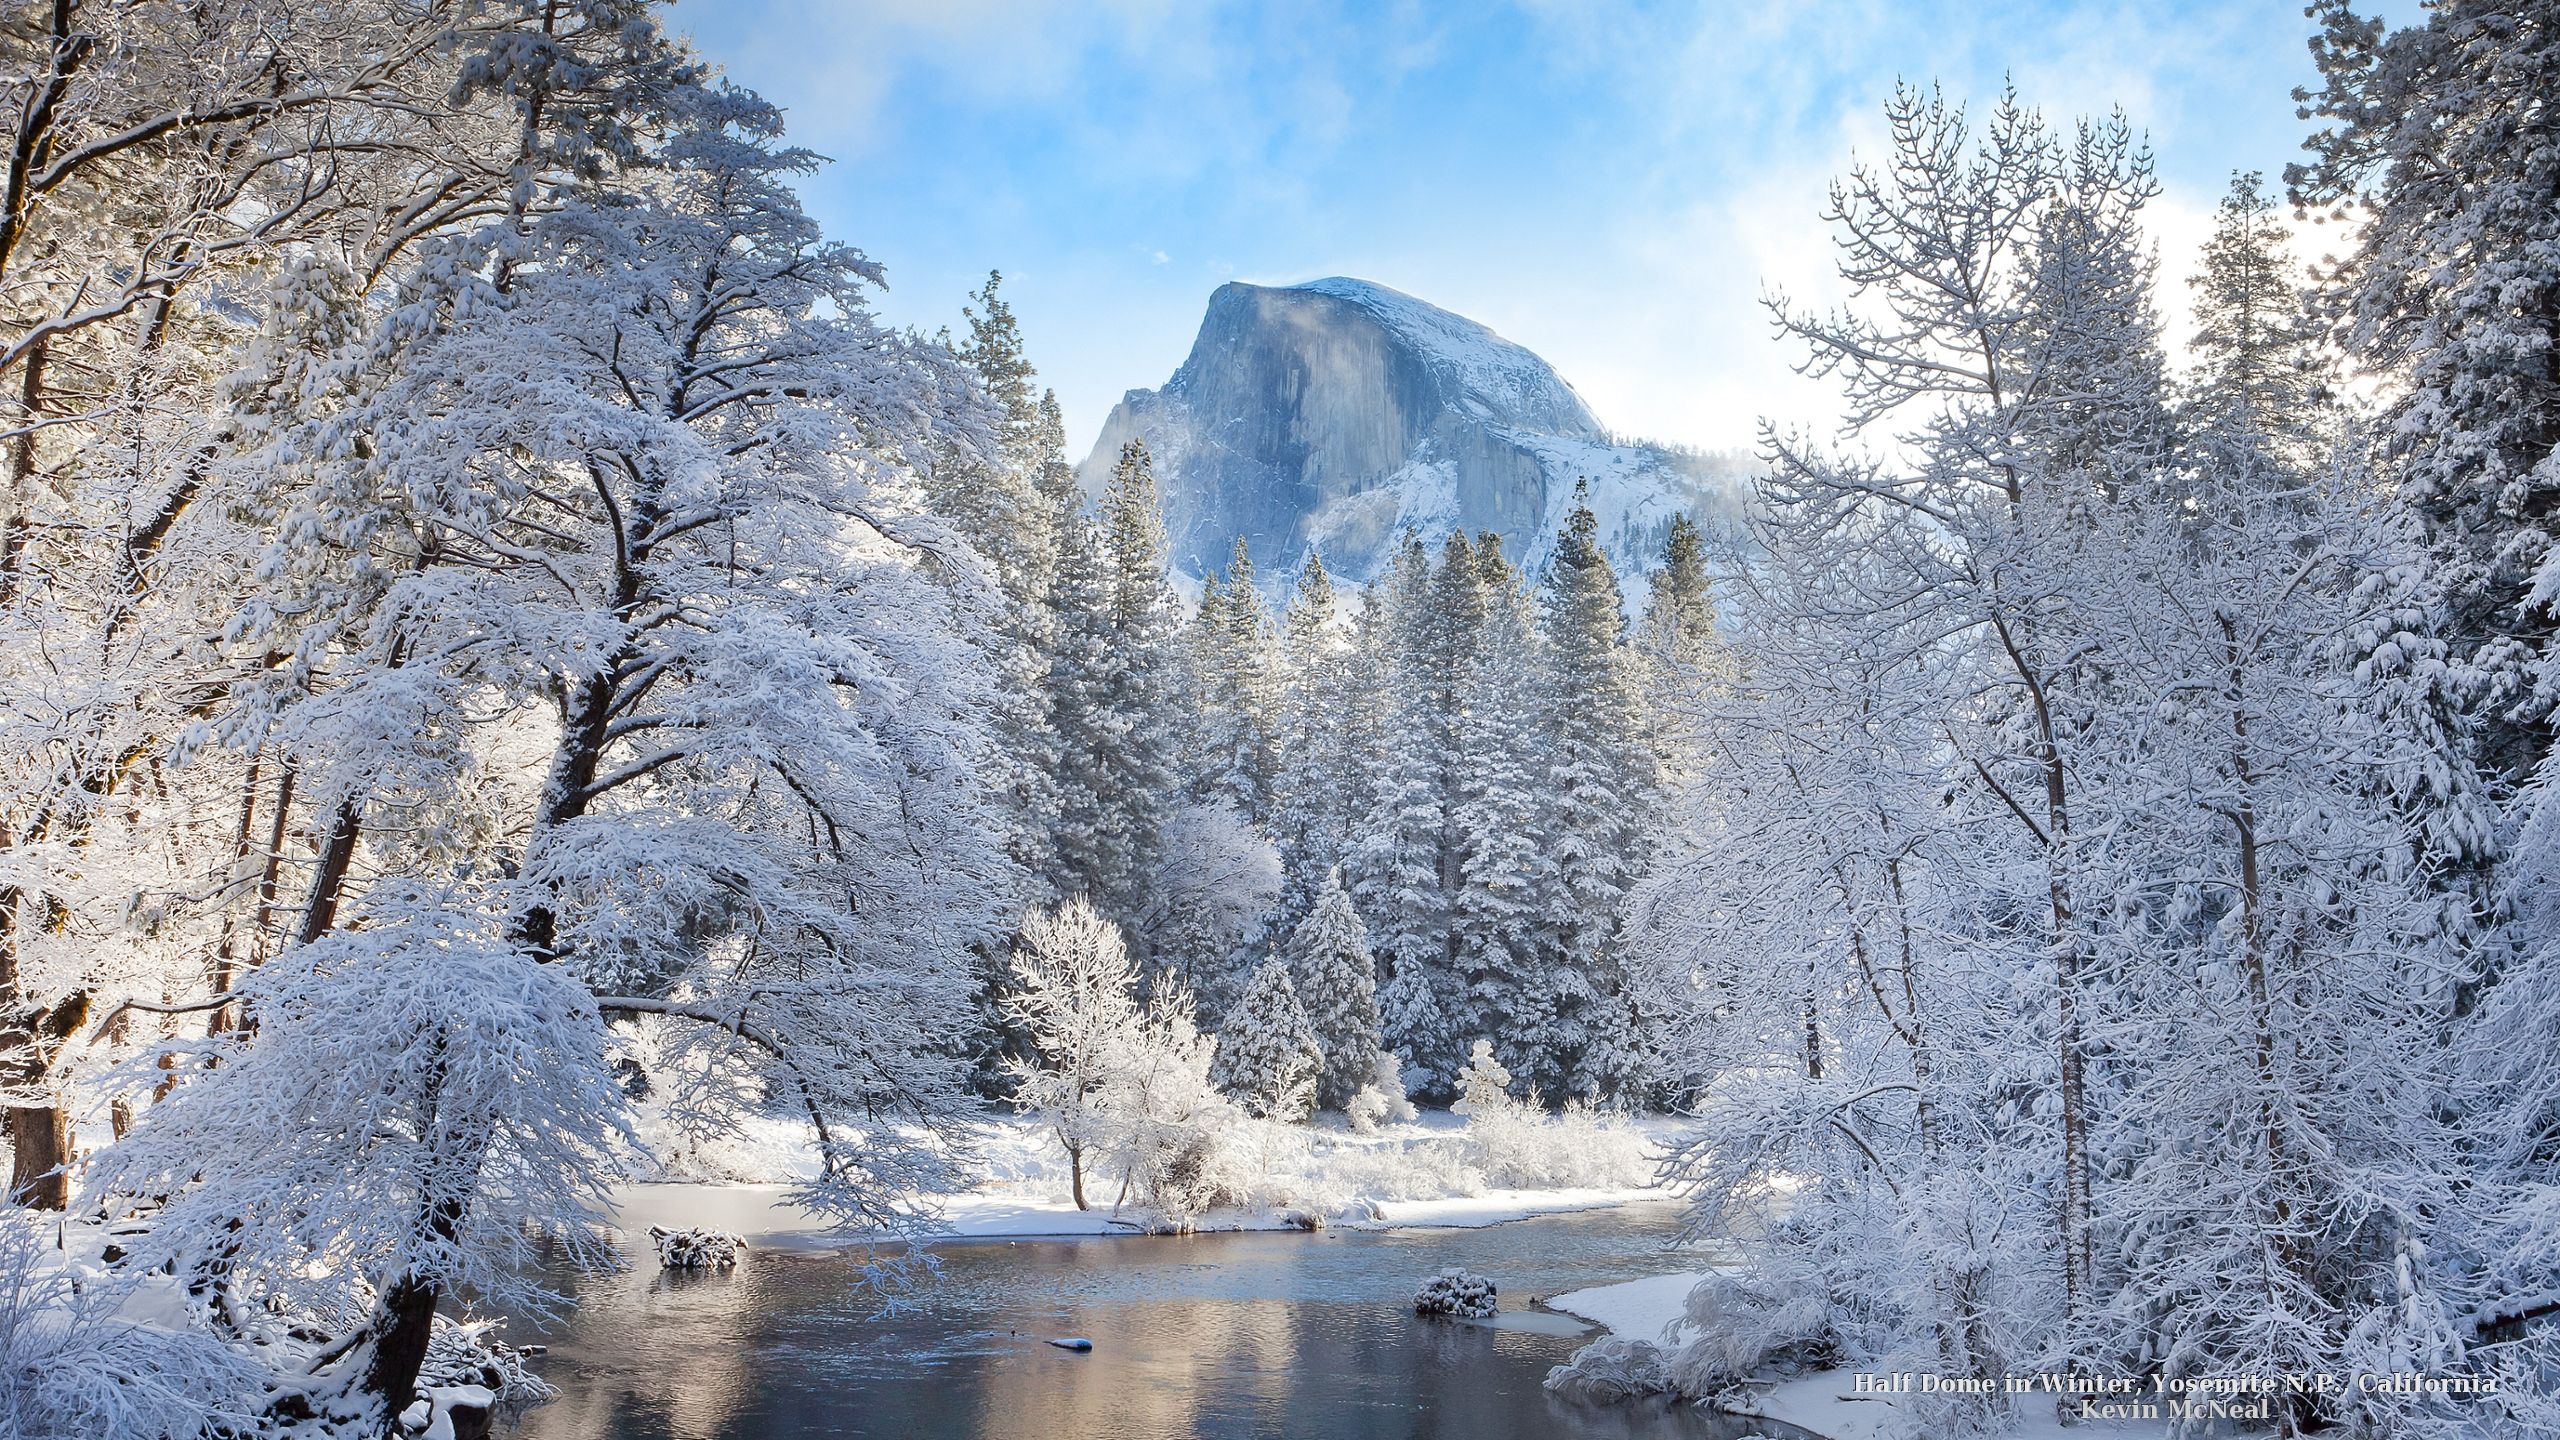 Half Dome in Winter, Yosemite N.P., California. Yosemite, Winter scenery, Winter scenes